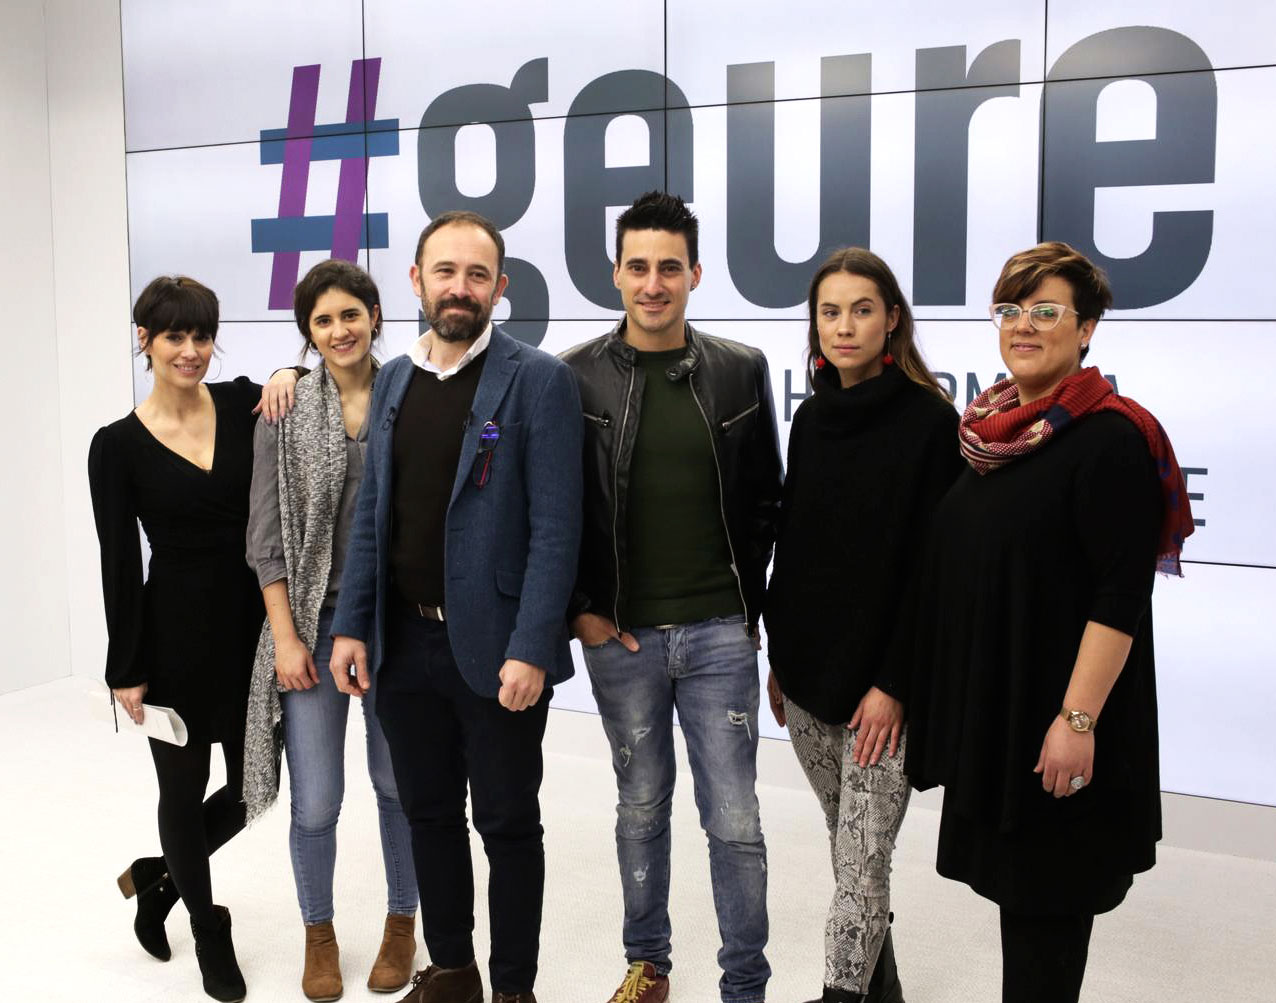 Influencers vascos se suman a #Geure, una iniciativa para movilizar a la juventud de Gipuzkoa en favor de la igualdad